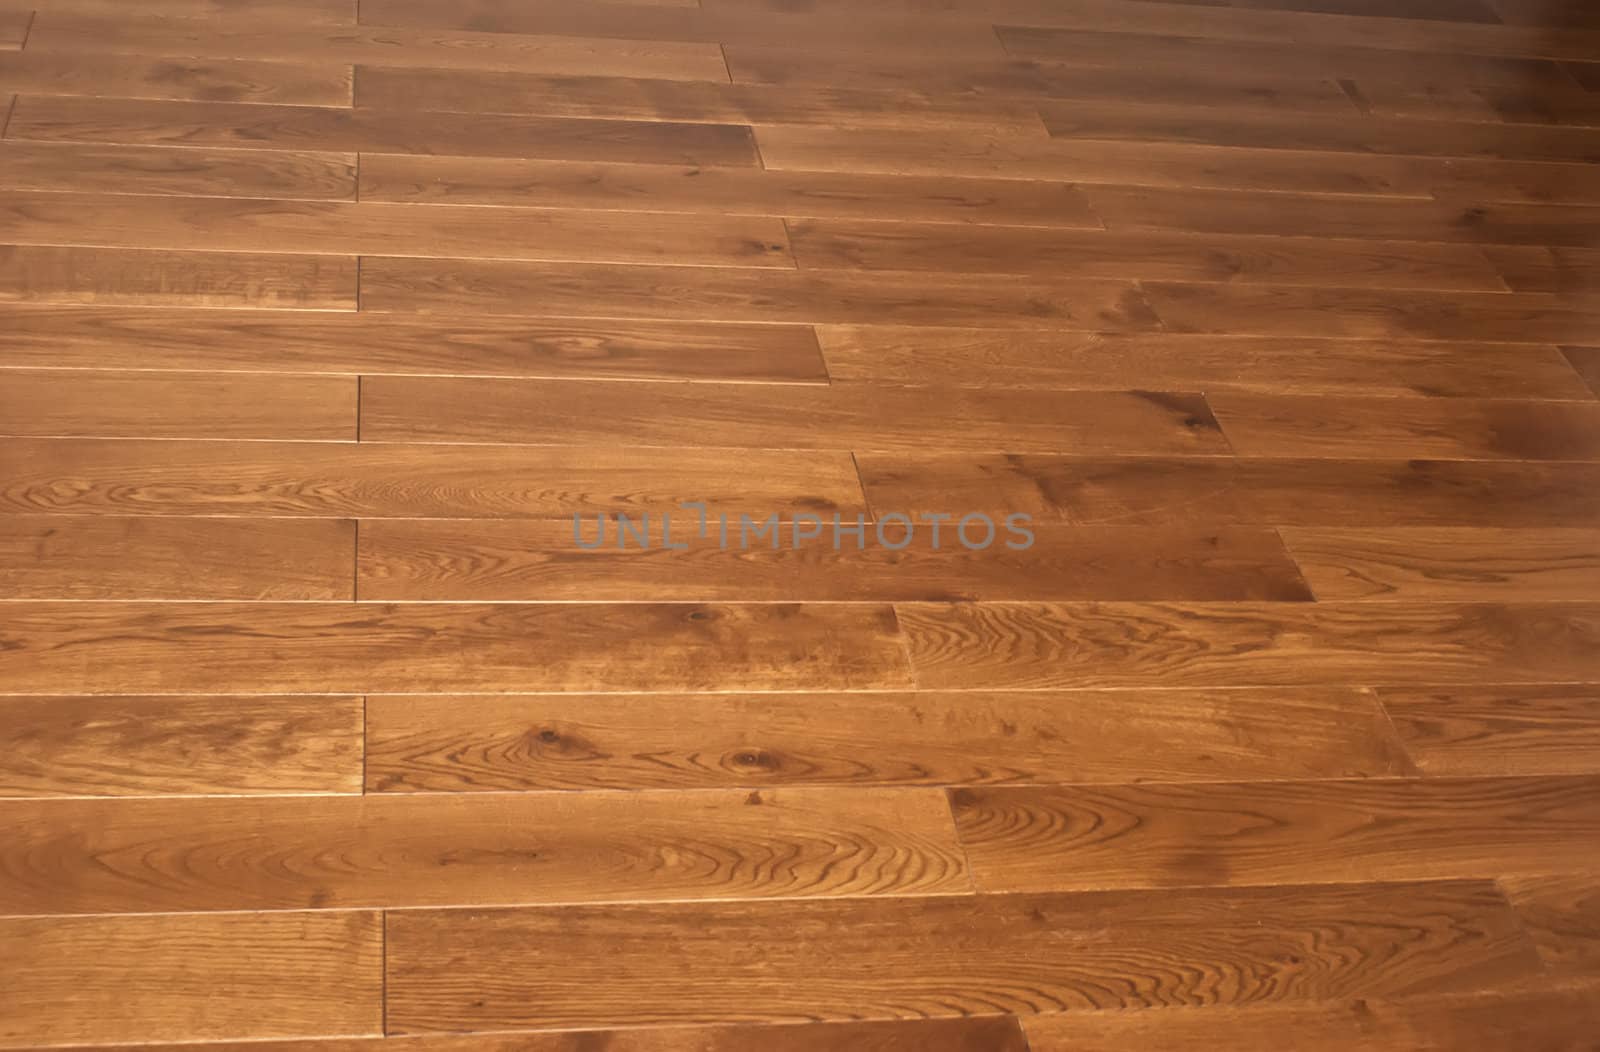 Texture of wooden floor